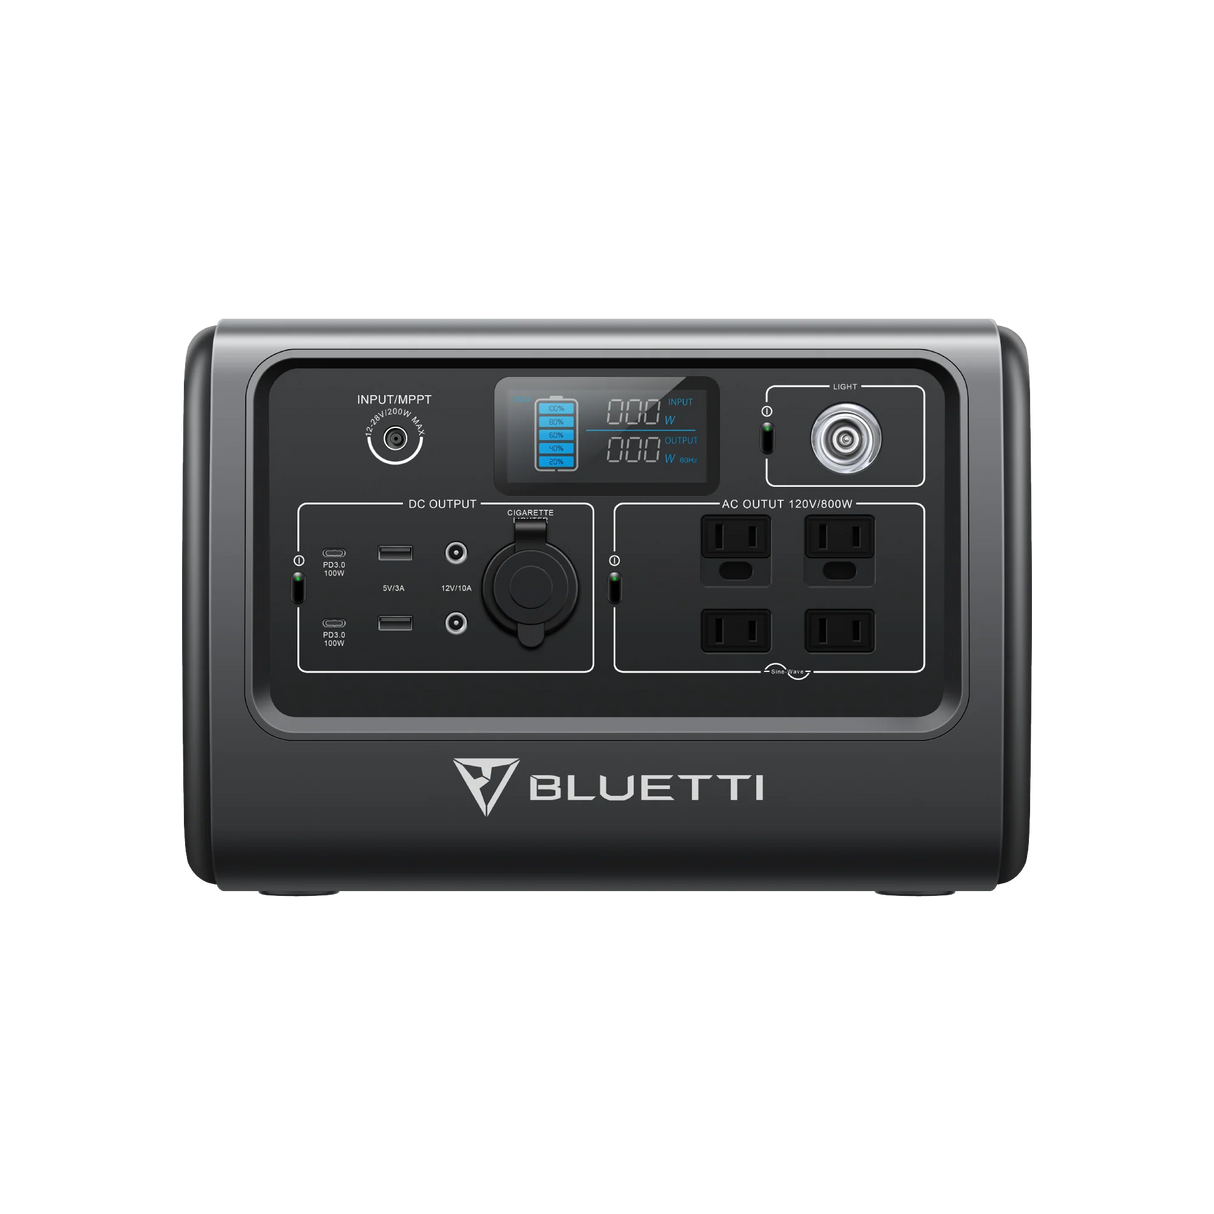 BLUETTI Portable Power Station EB70S